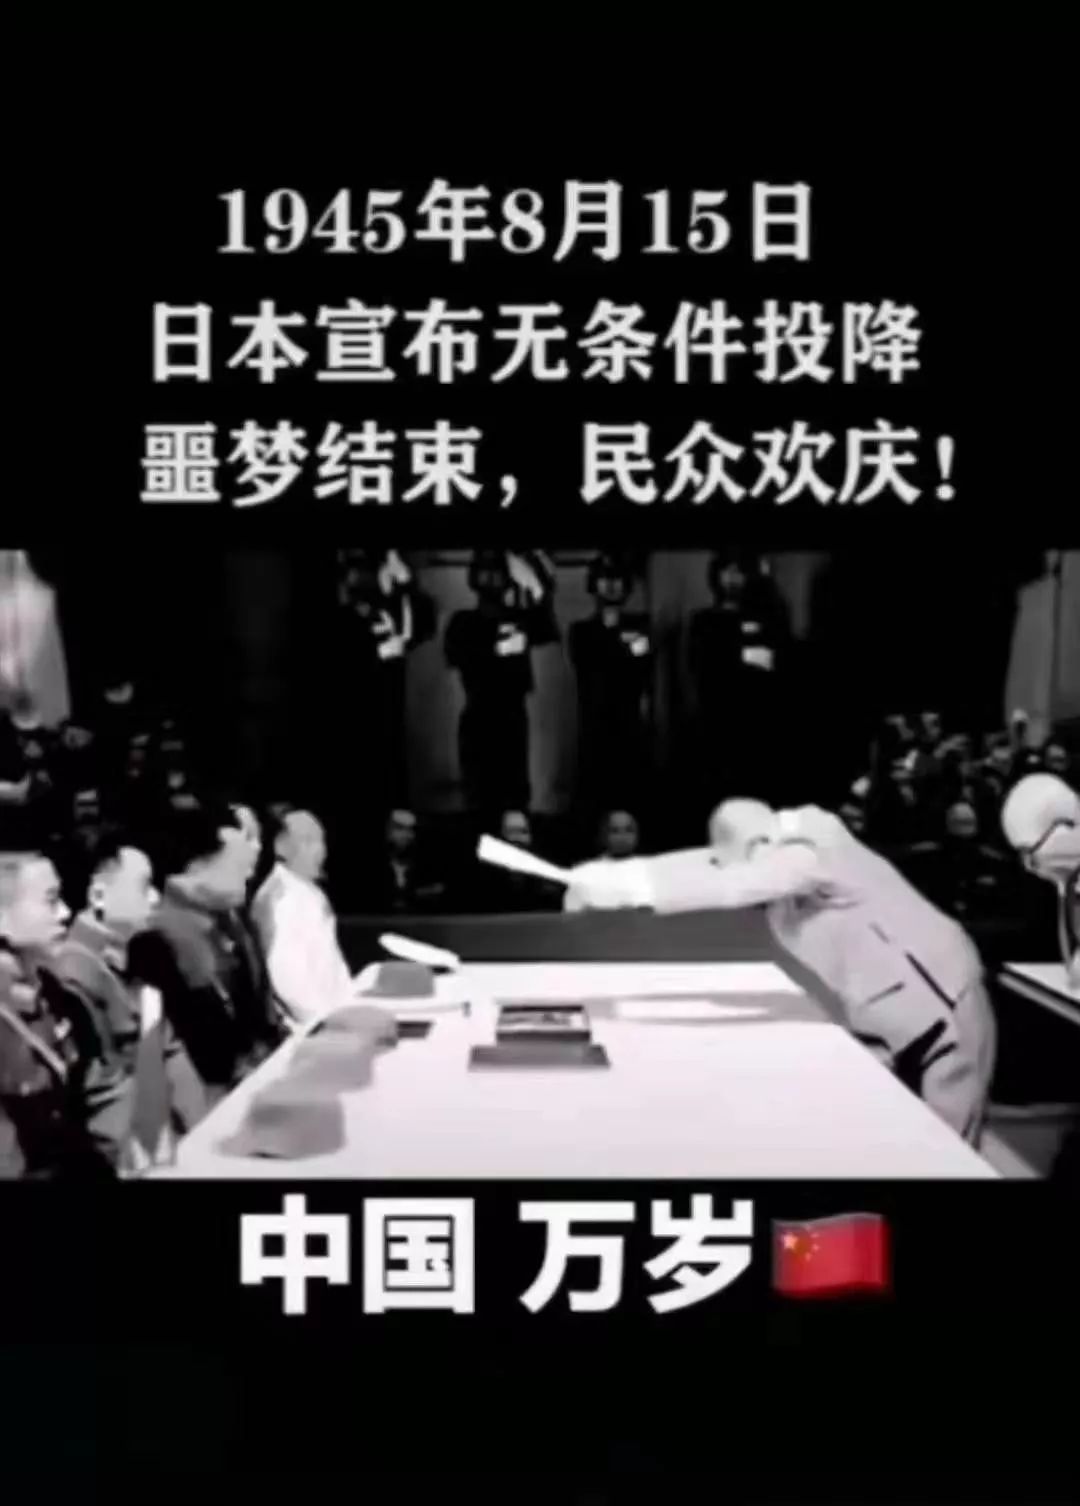 74年前的今天日本无条件投降这才应该是今天刷满朋友圈的消息